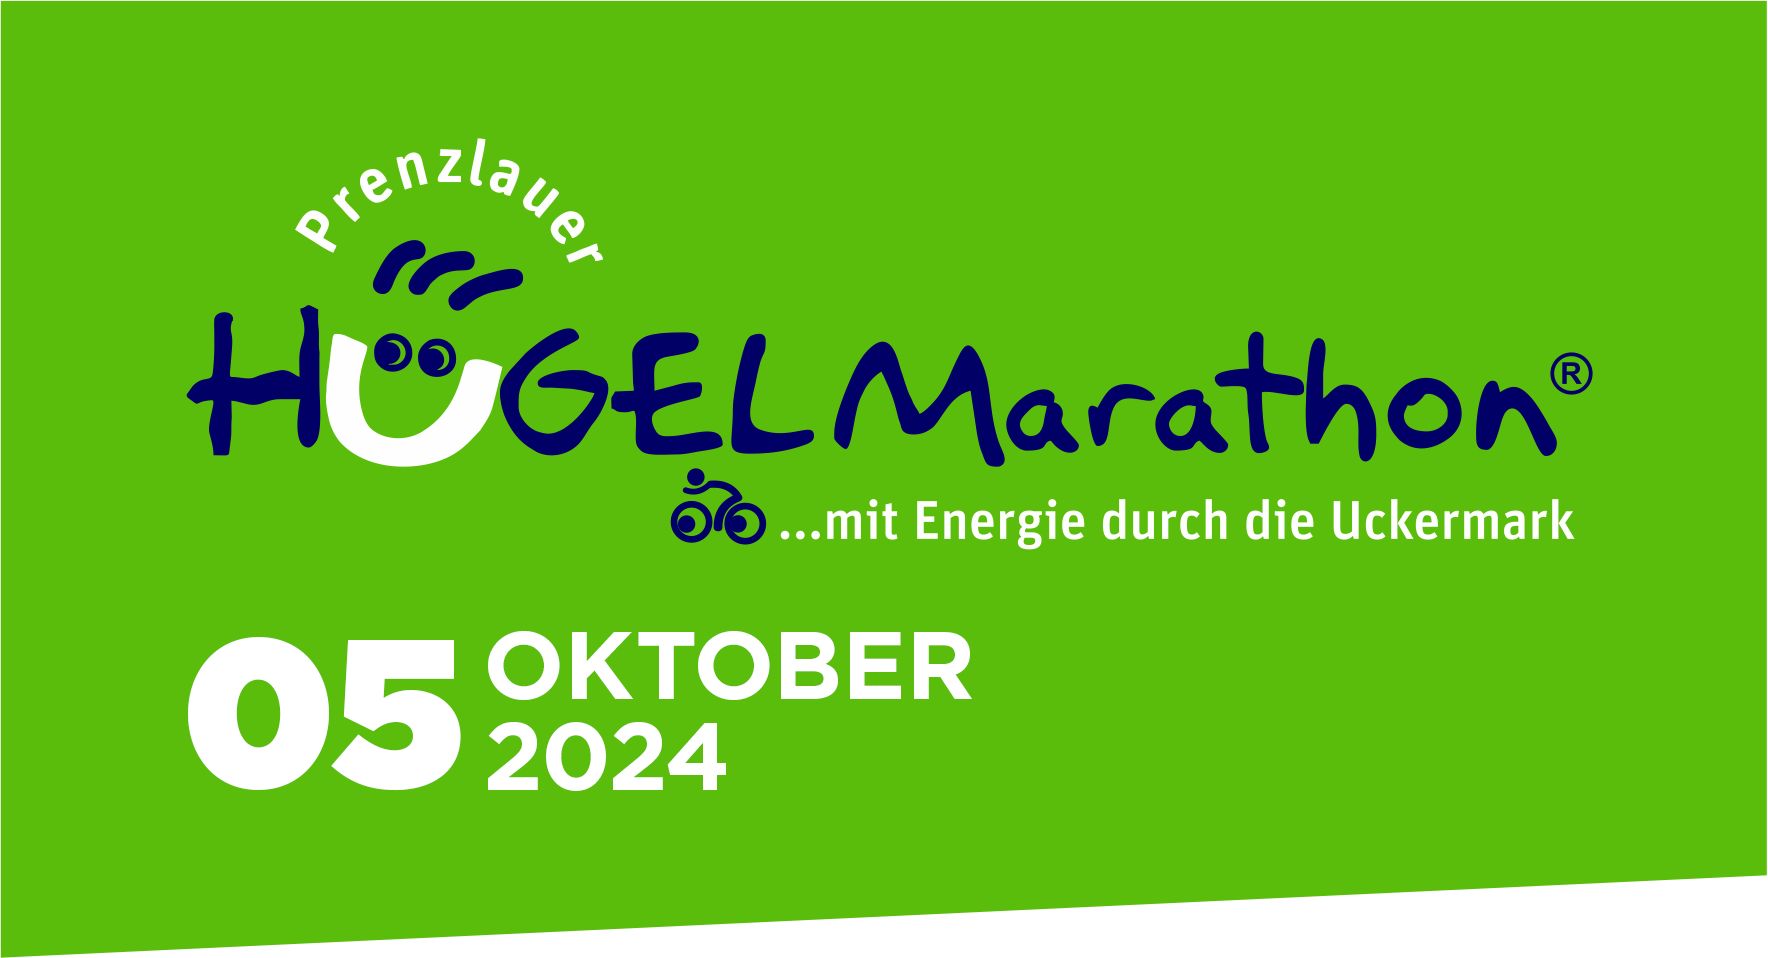 Prenzlauer Hügelmarathon - Mit Energie durch die Uckermark